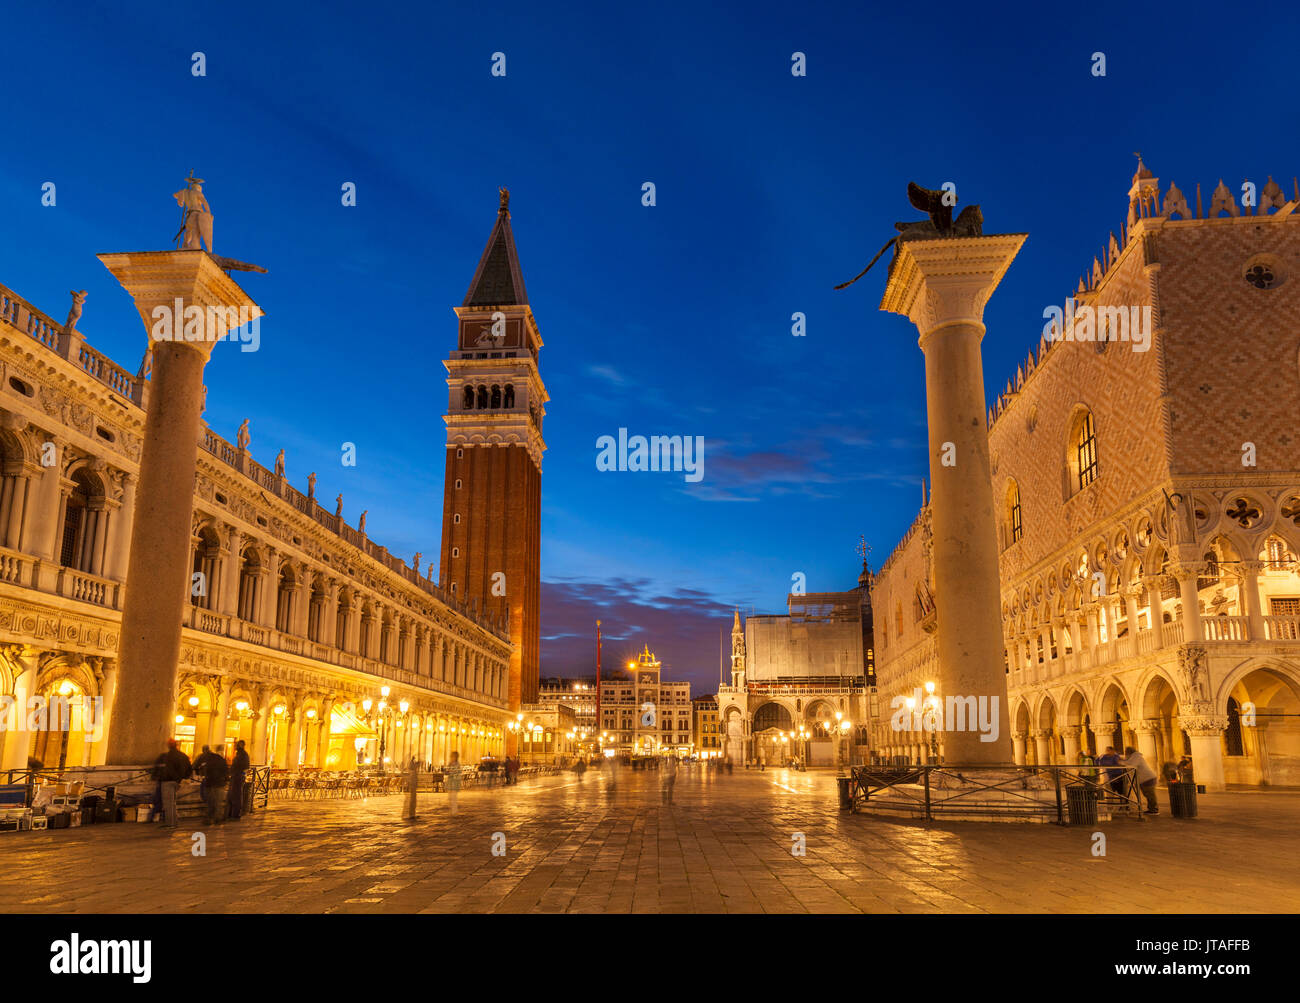 Torre Campanile, Palazzo Ducale (Palacio de los Doges), Piazzetta, Plaza de San Marcos, por la noche, Venecia, UNESCO, Véneto, Italia, Europa Foto de stock